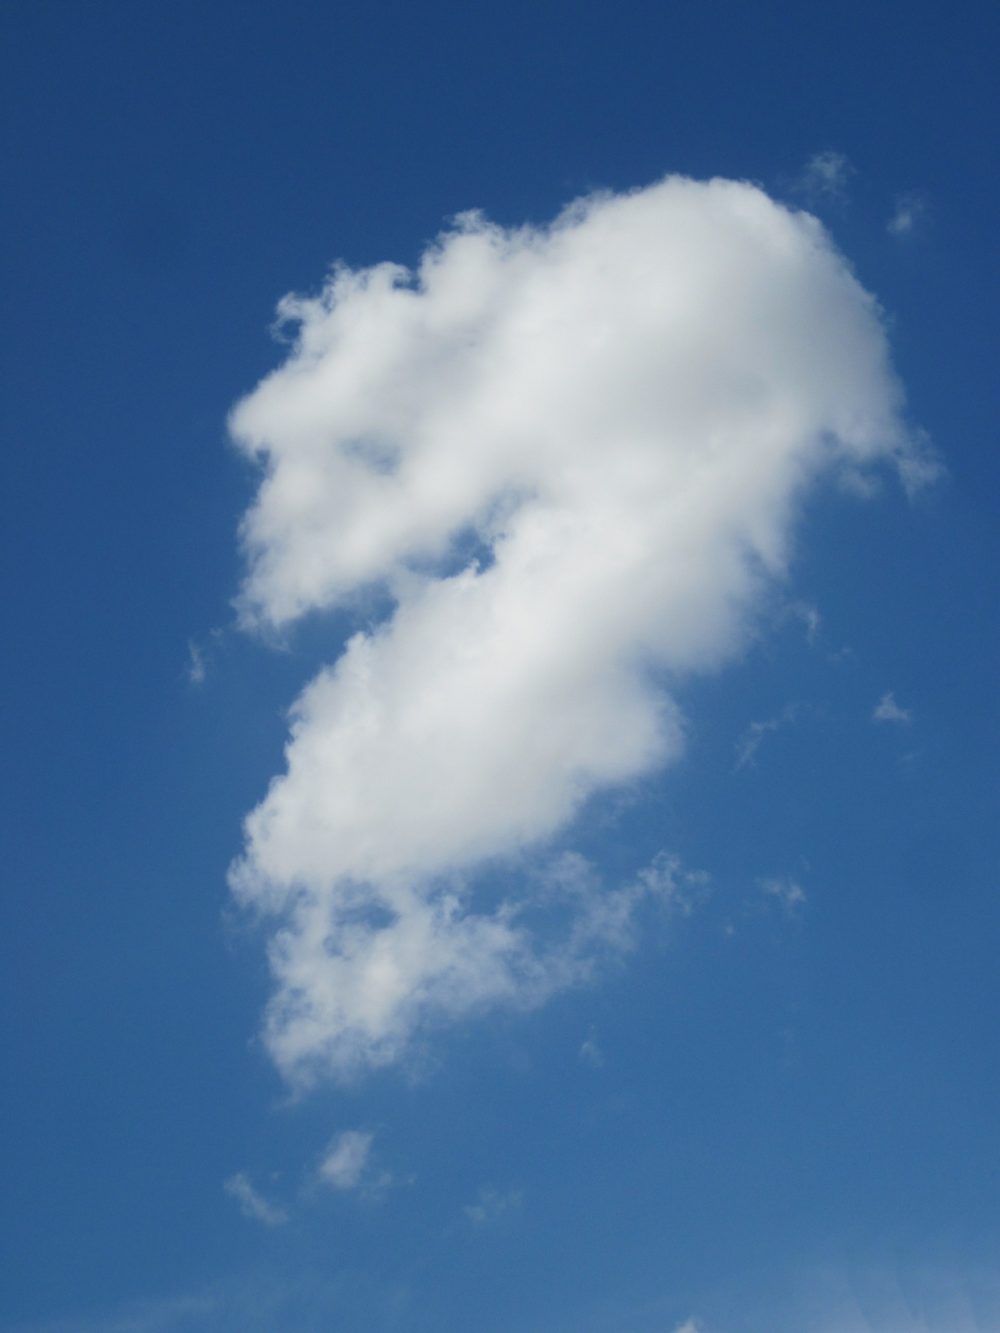 cloud shaped like question mark